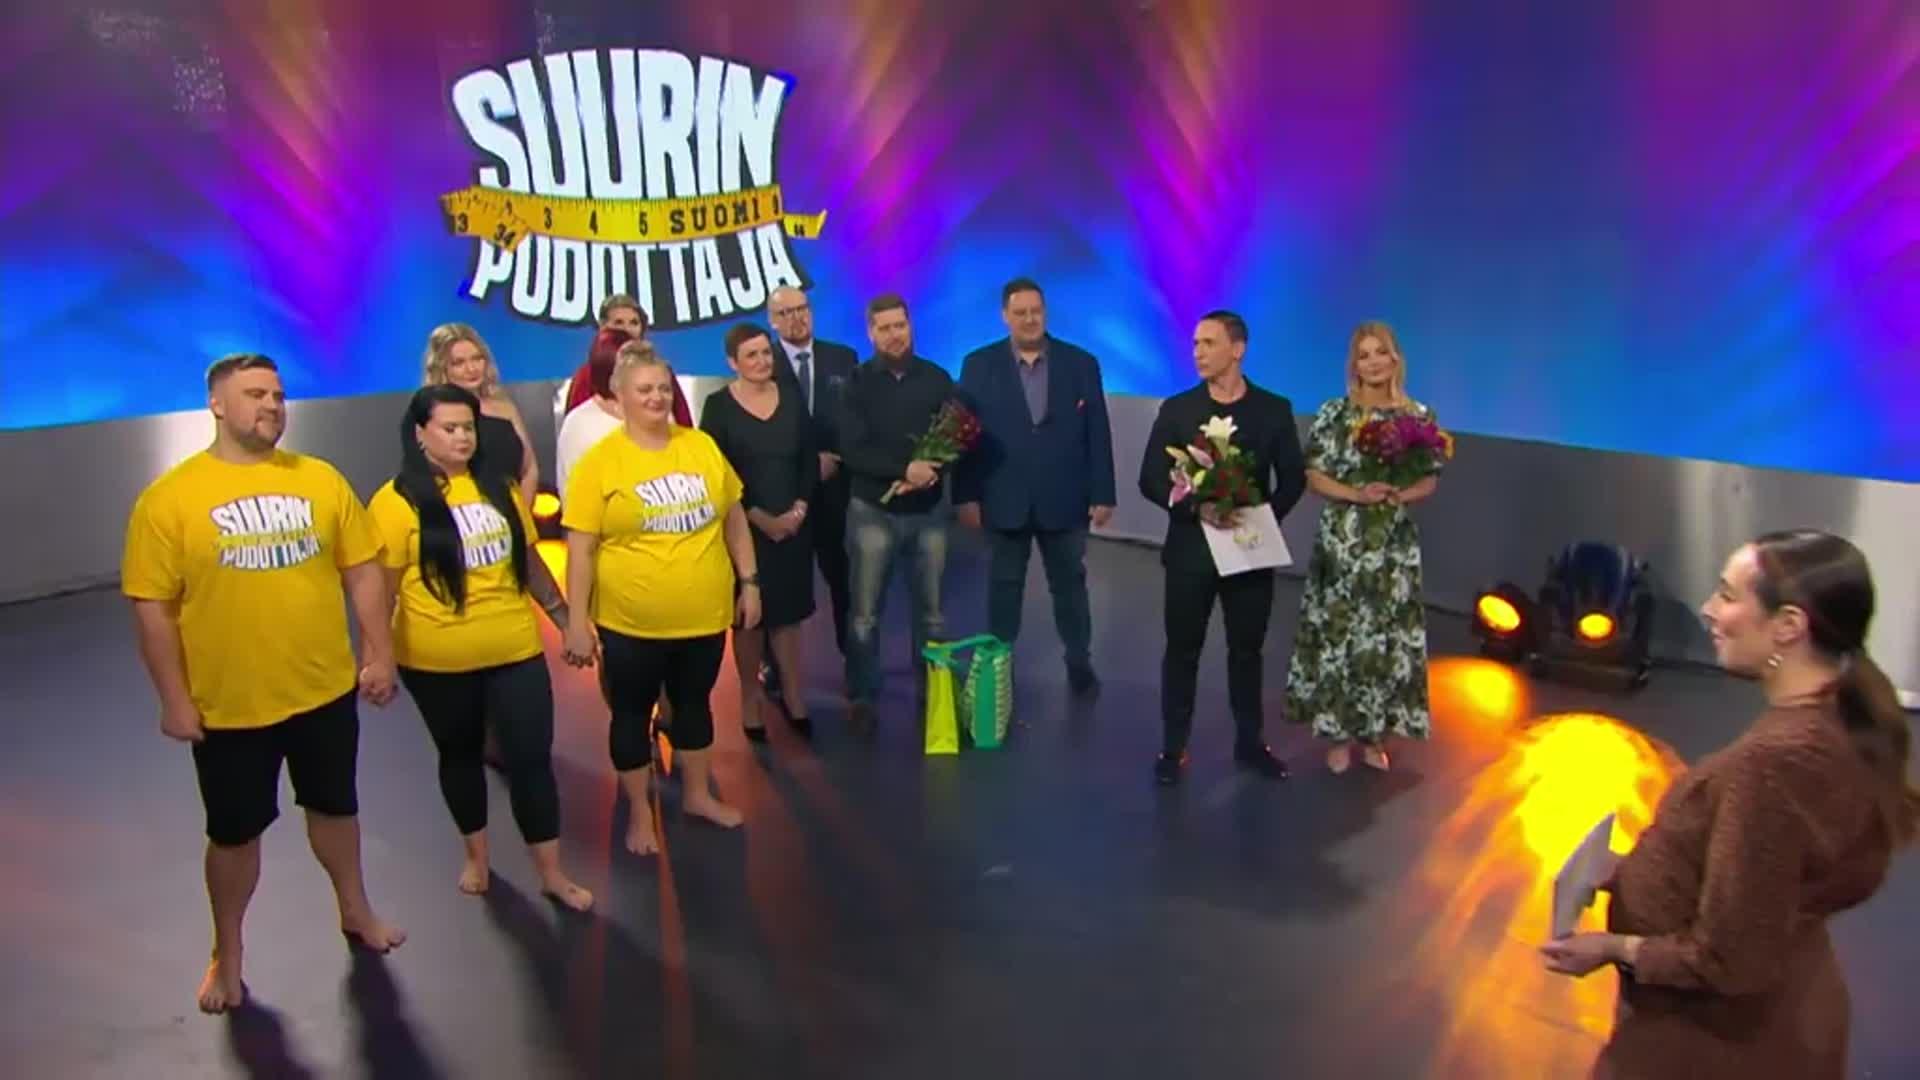 Suurin pudottaja Suomi | Klipit